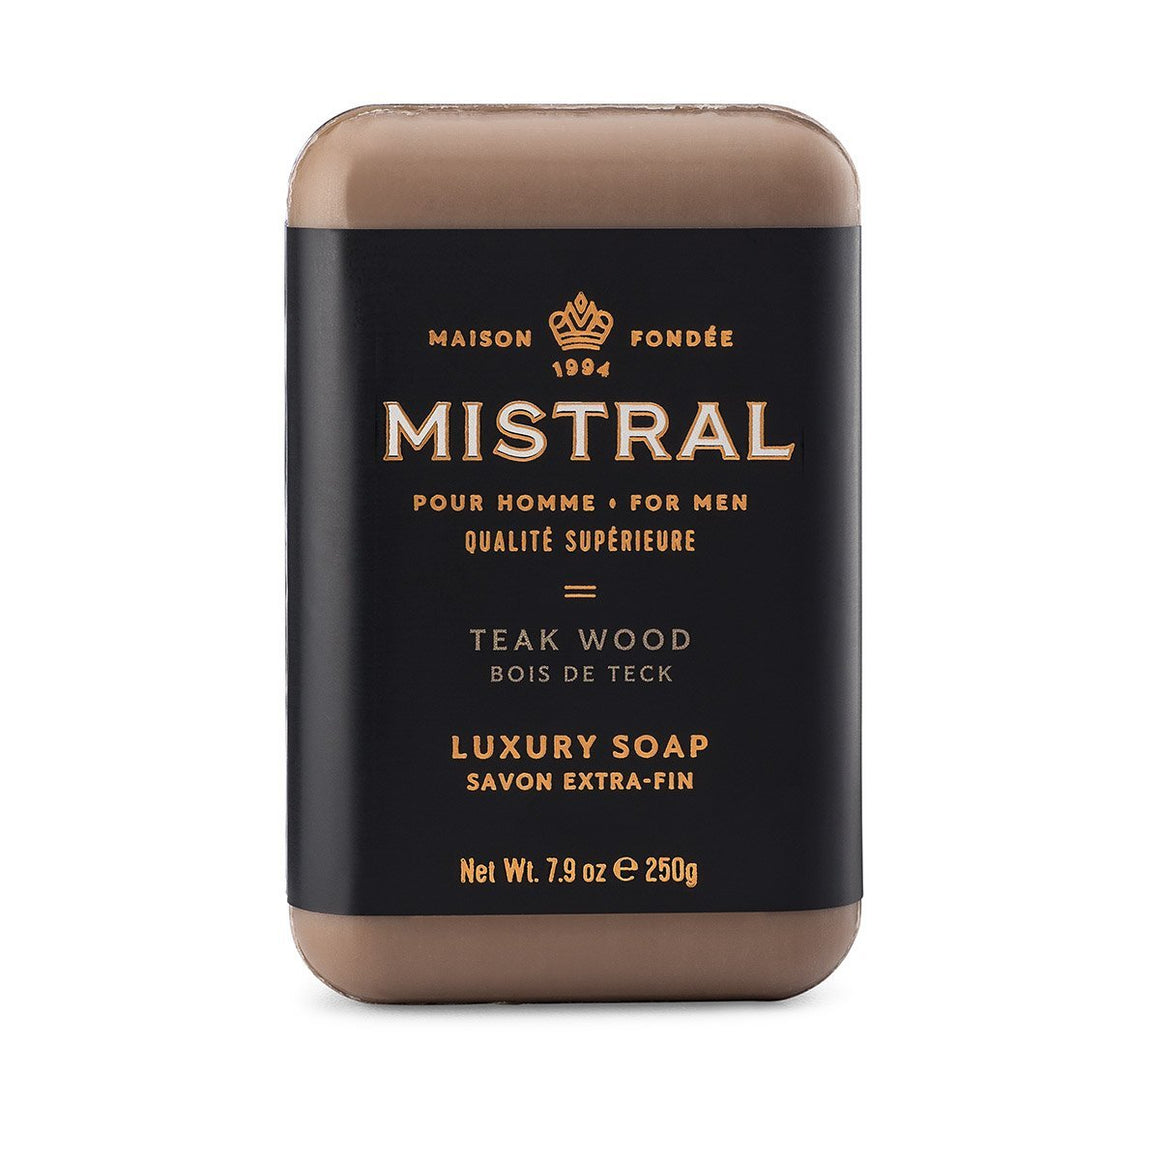 Mistral Man's Bar Soap